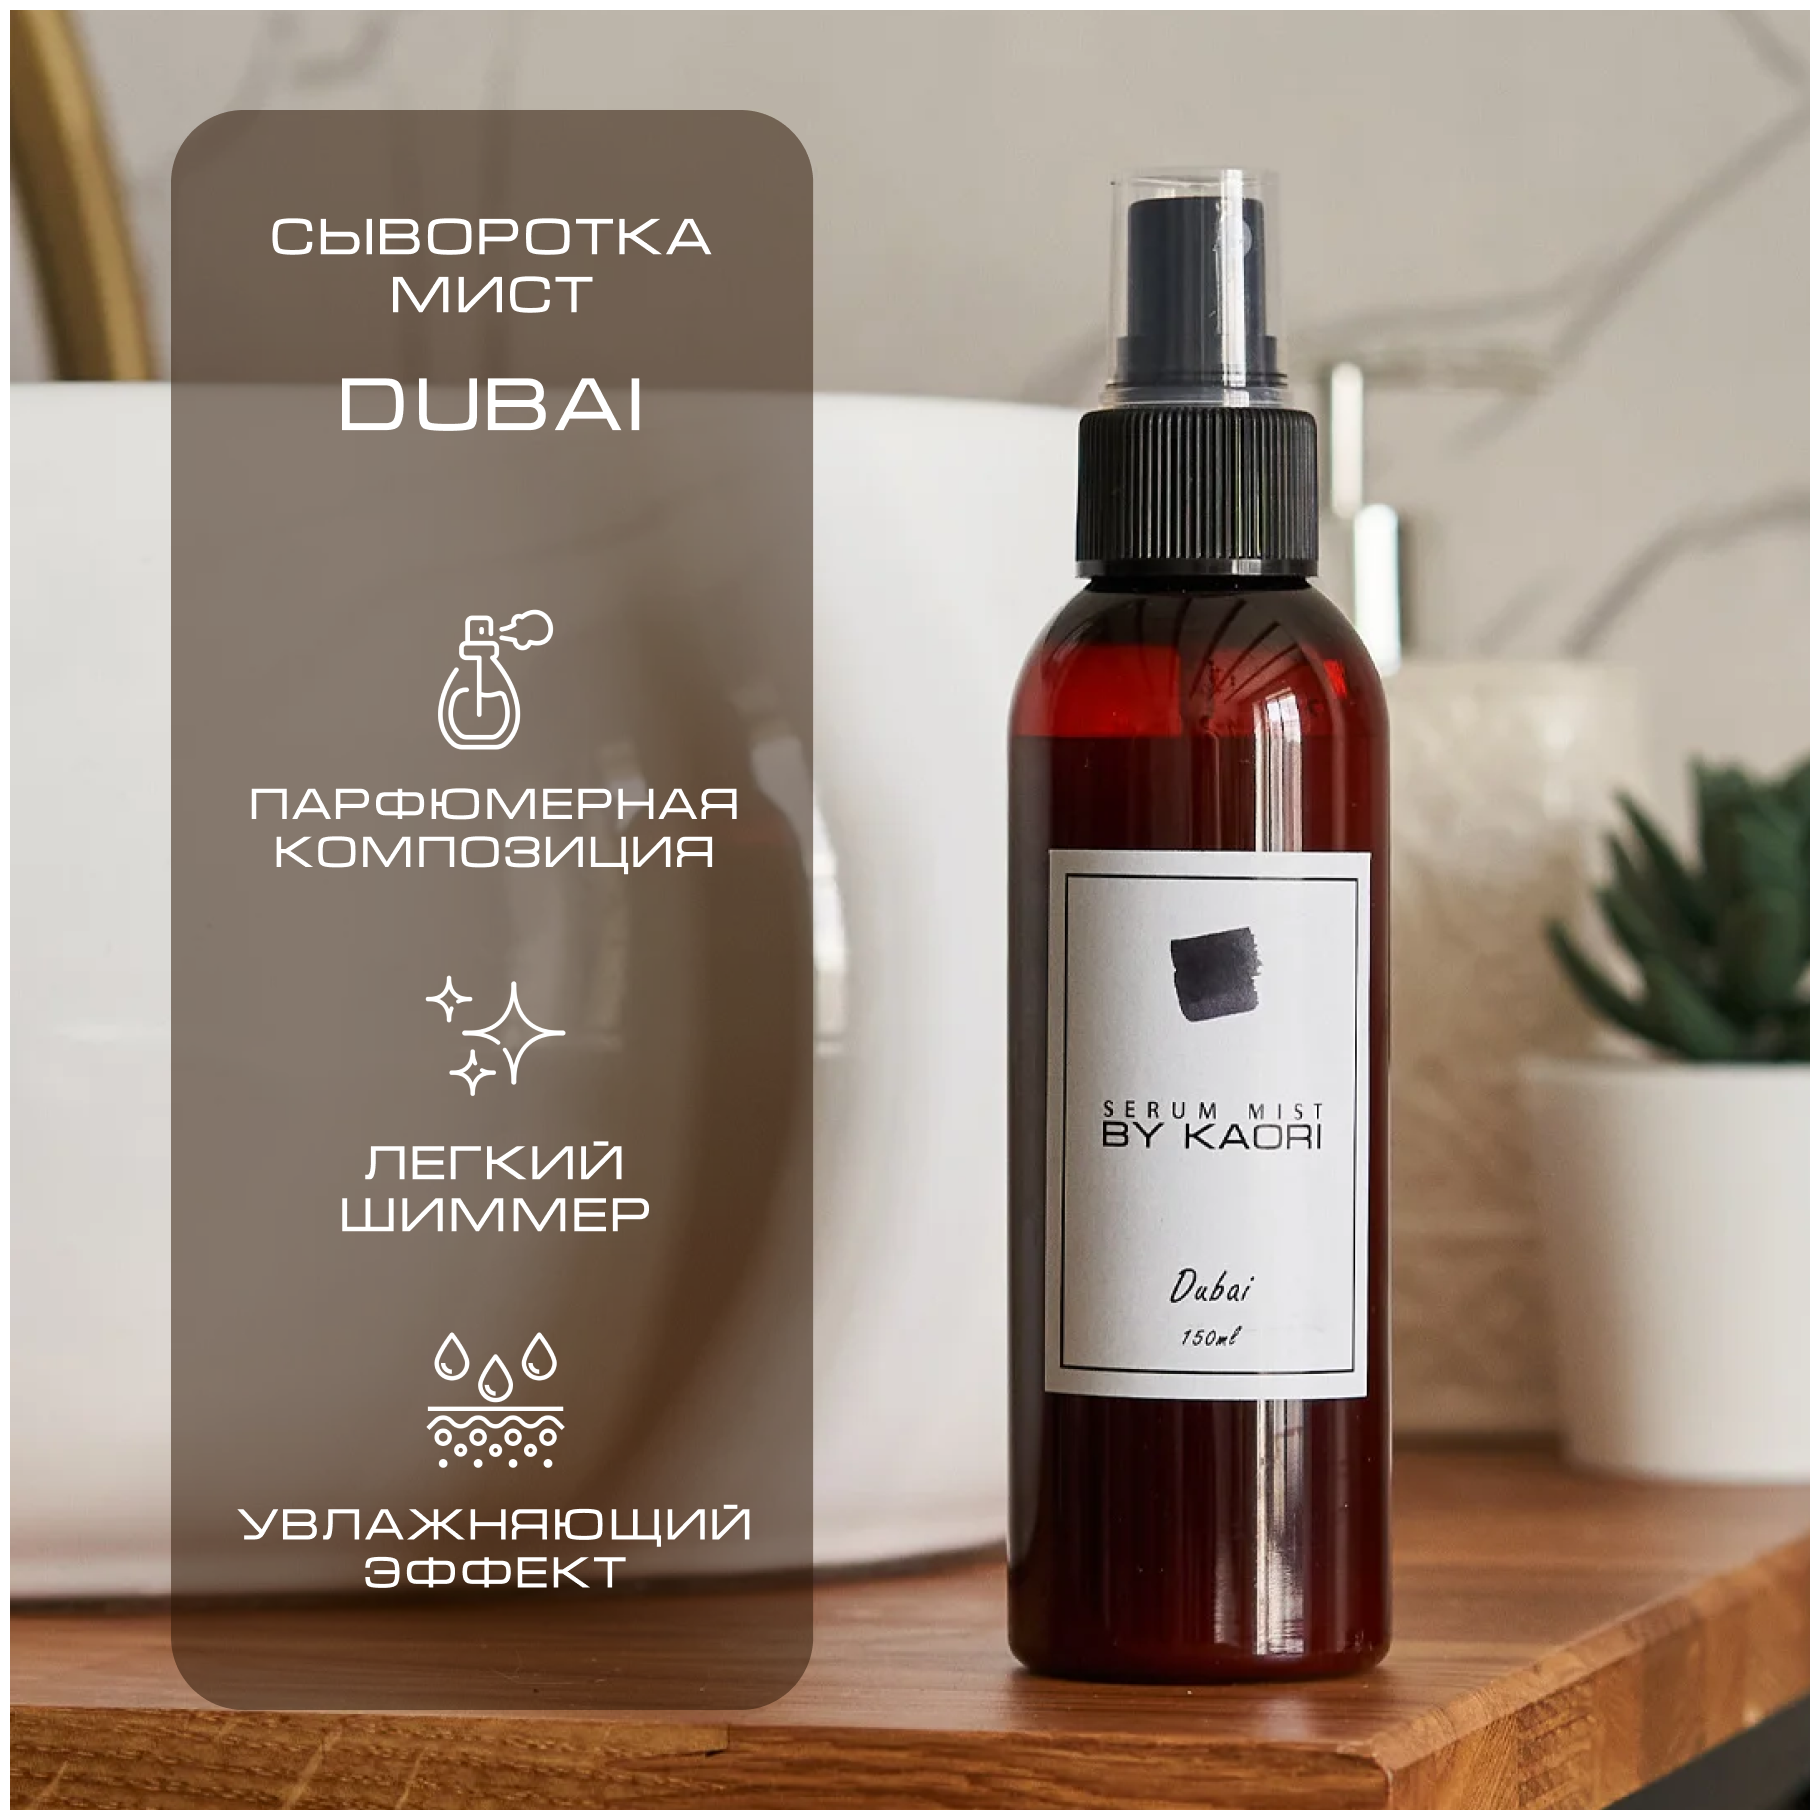 Сыворотка мист для тела BY KAORI спрей для тела парфюмированный, аромат DUBAI (Дубаи) 150 мл